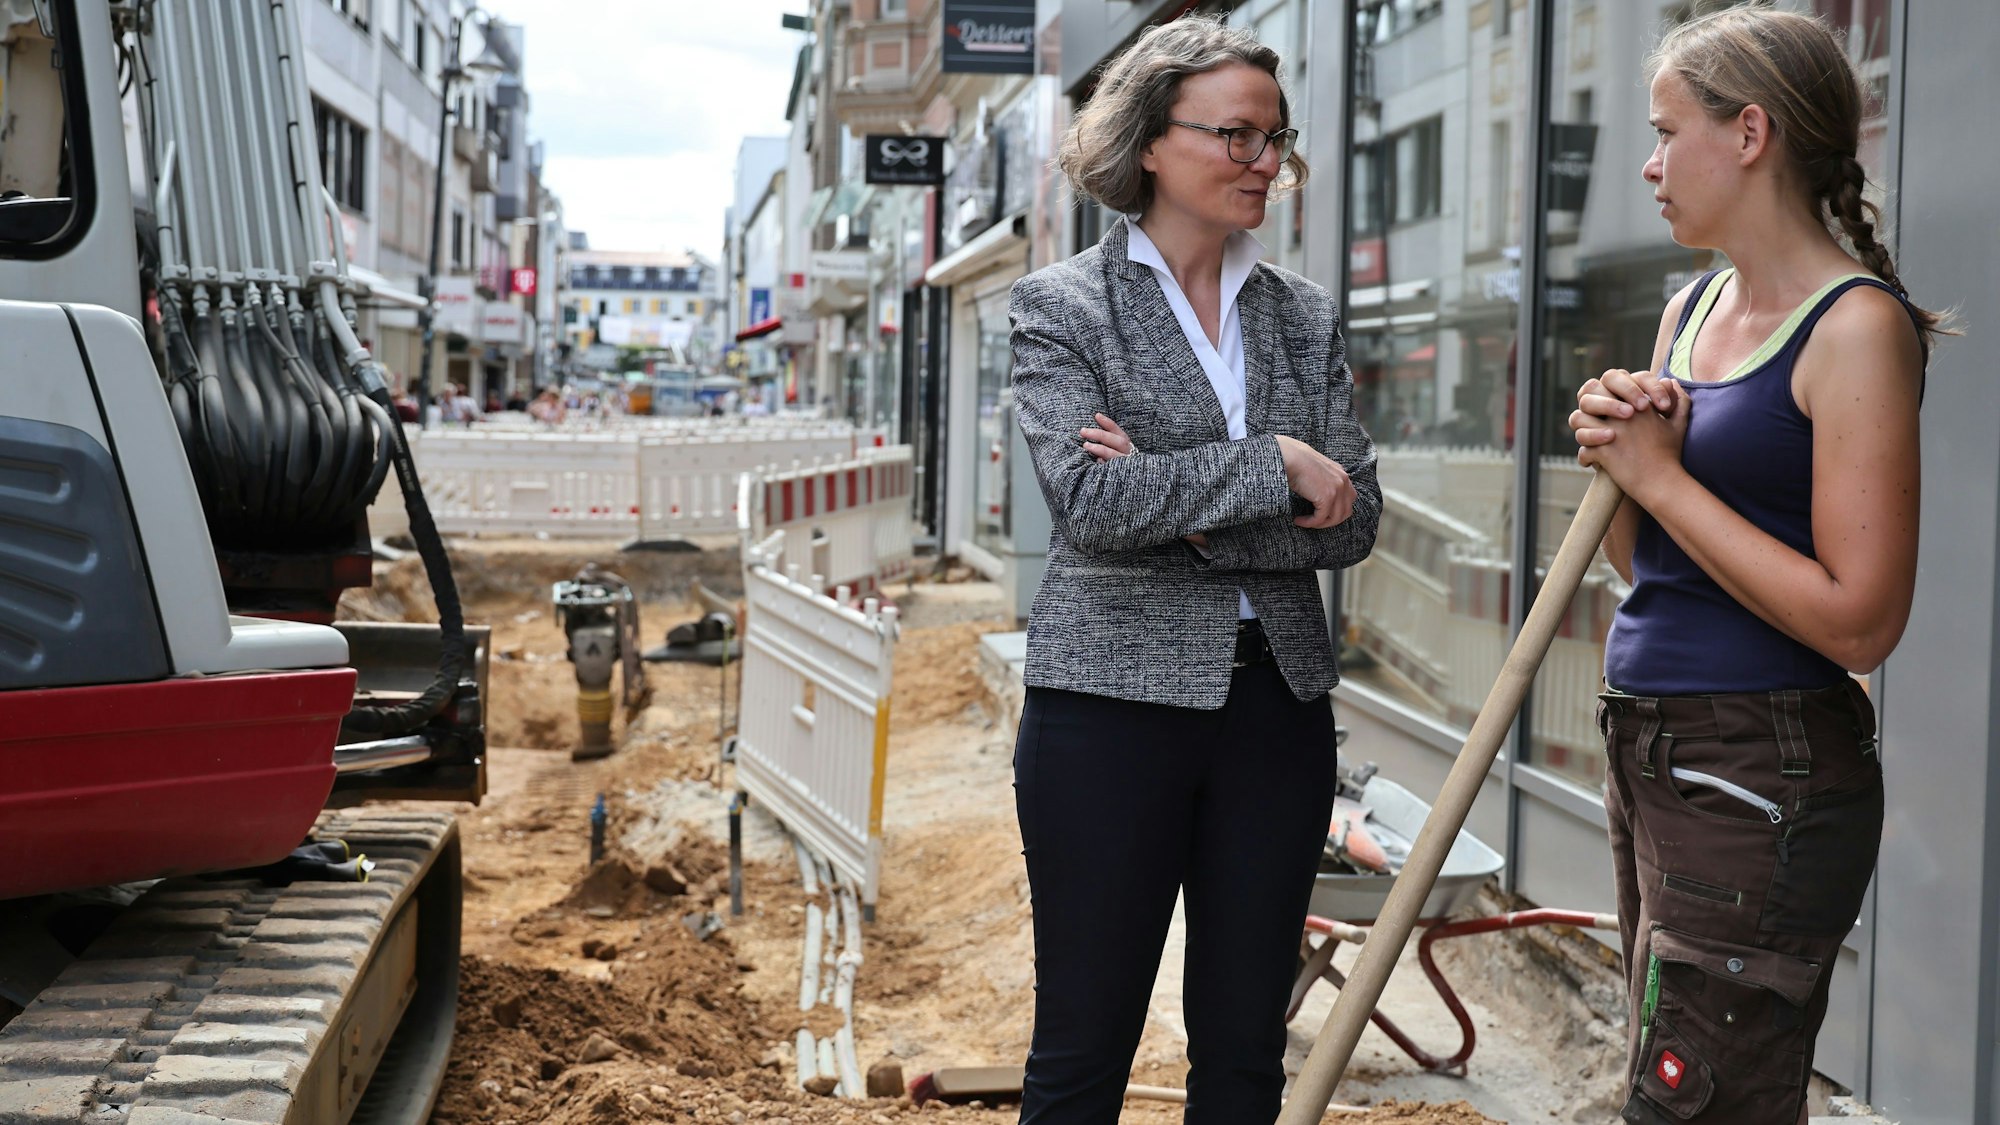 Die Euskirchener Innenstadt ist eine einzige Baustelle. Hier wird neues Pflaster verlegt. An der Baustelle, in der ein Kleinbagger steht, spricht Ina Scharrenbach mit der Praktikantin der Baufirma.